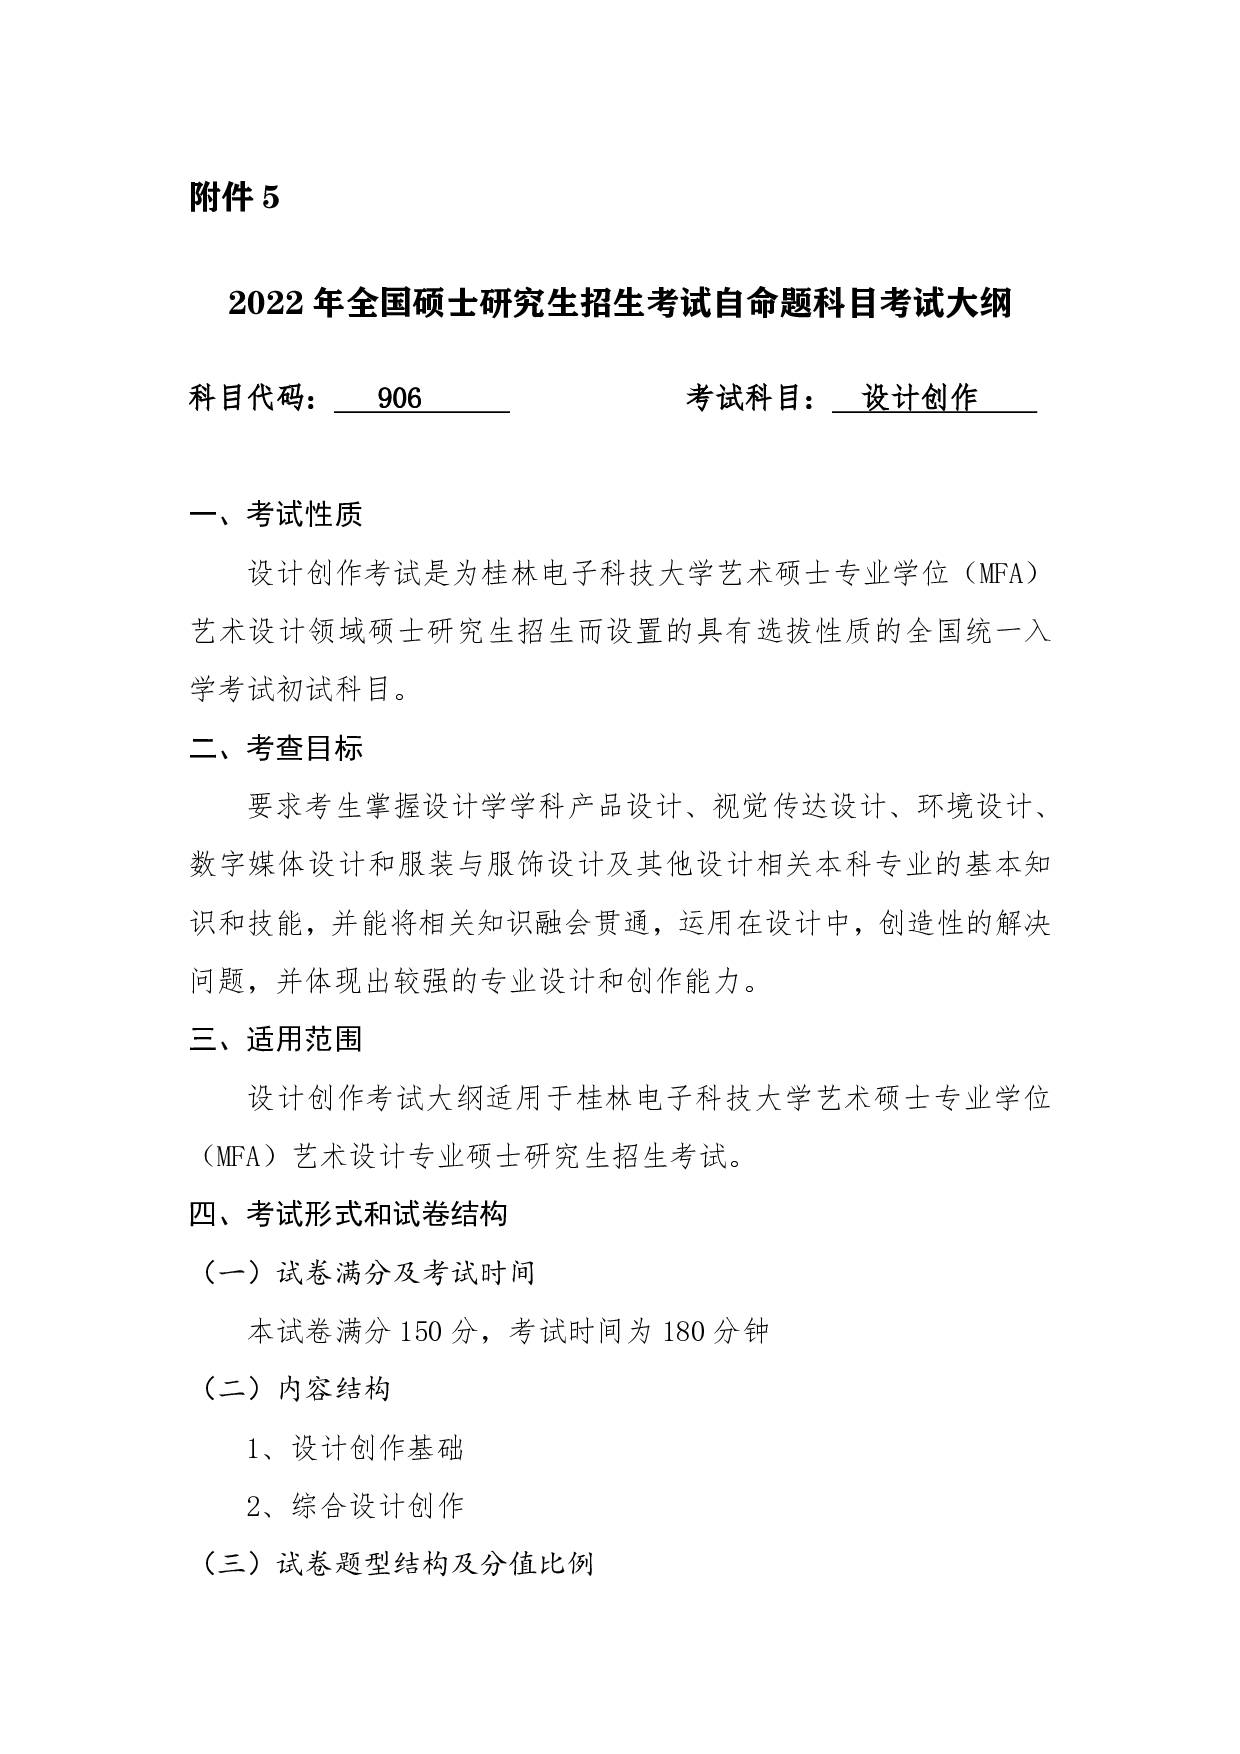 2022考研大纲：桂林电子科技大学2022年考研 906设计创作 考试大纲第1页